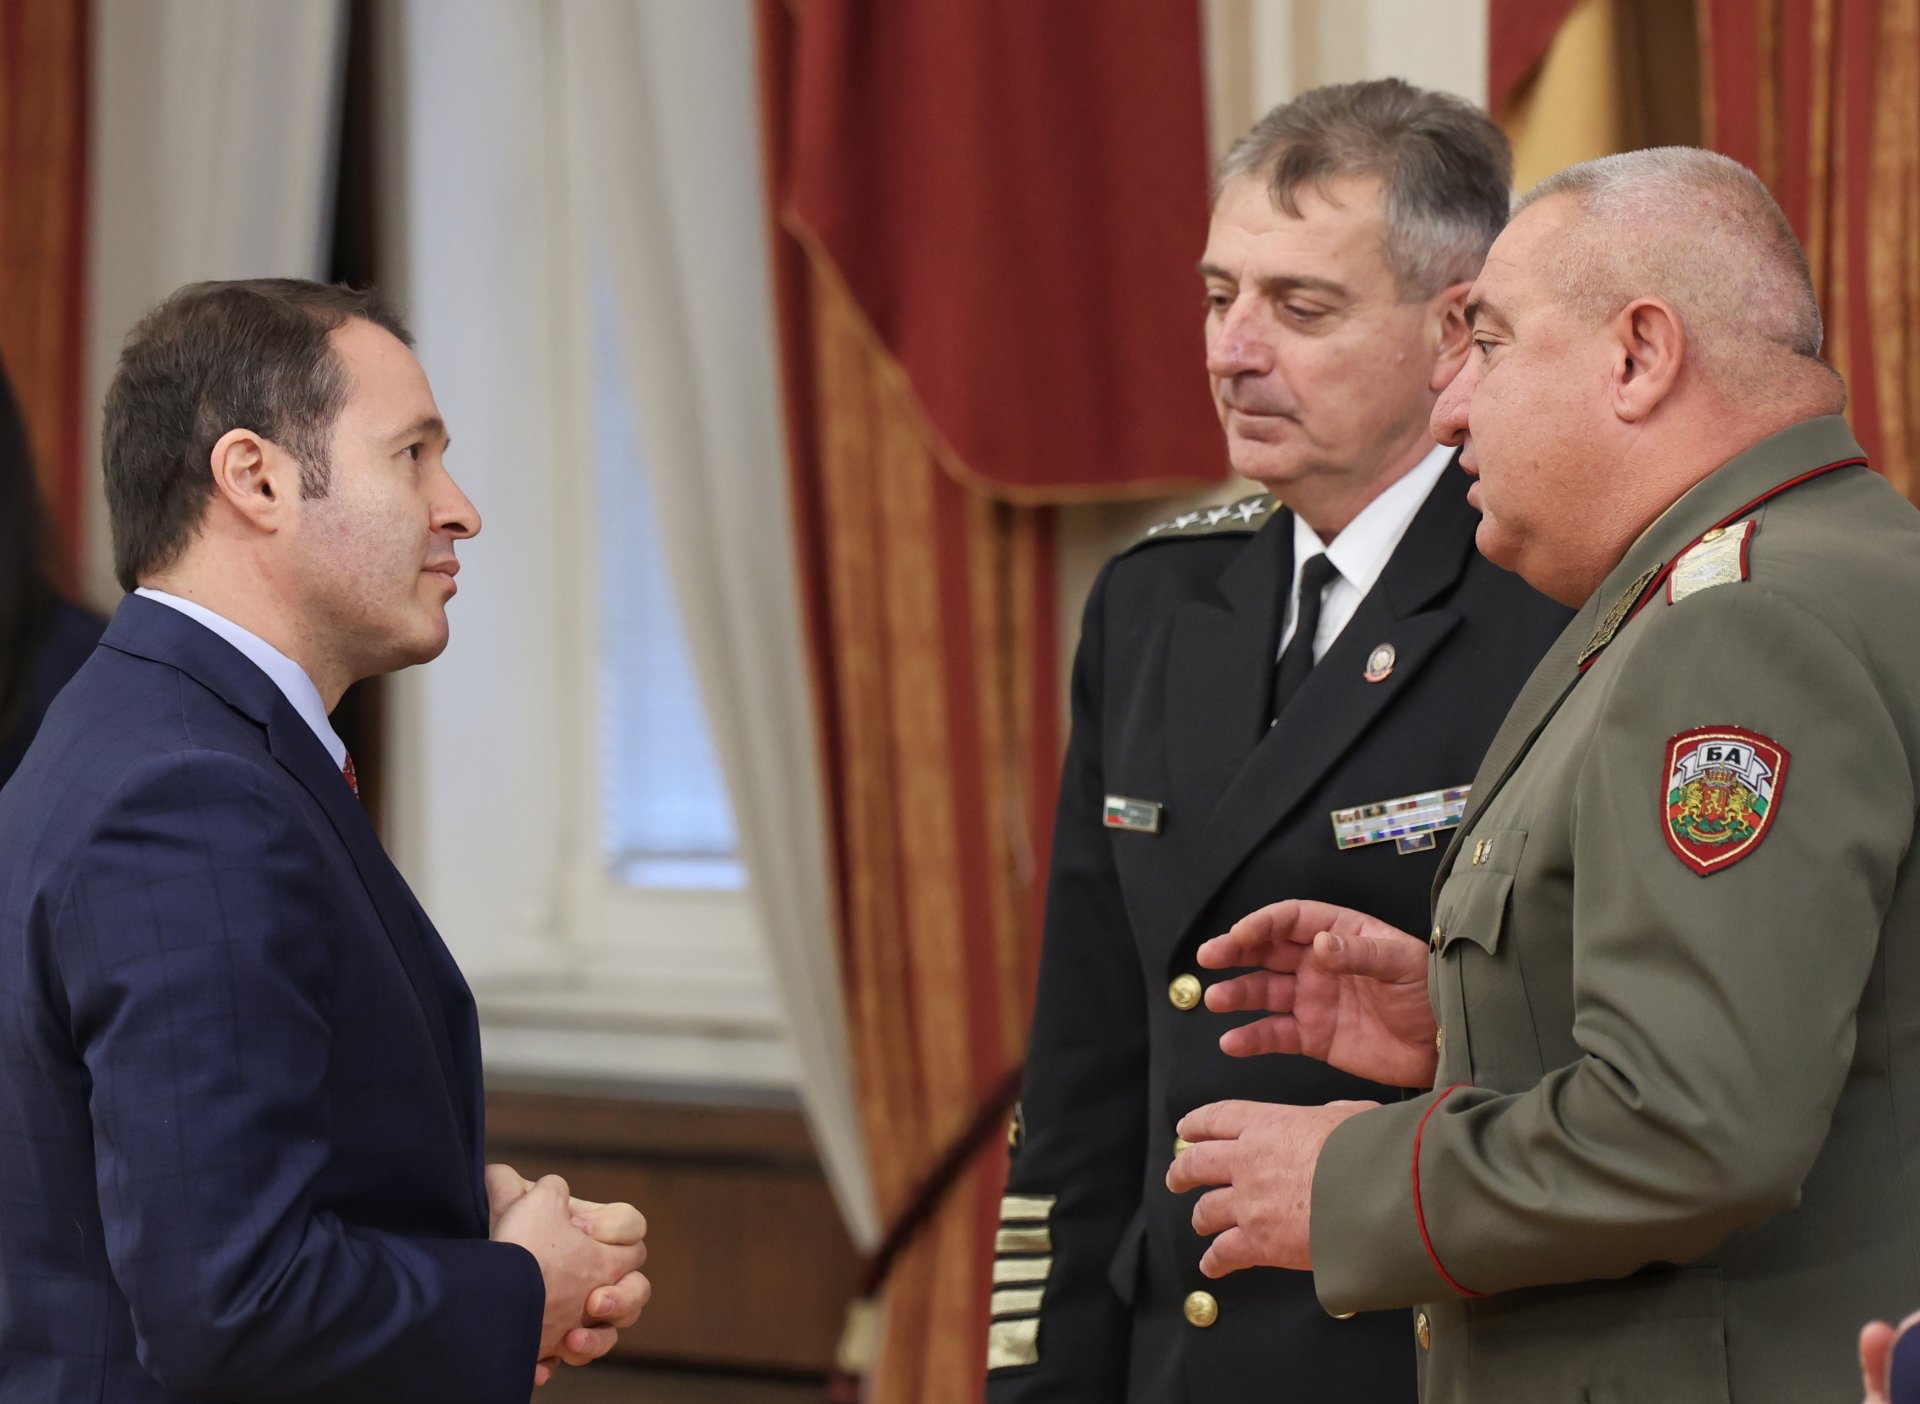 На събитието присъстват (от ляво надясно) съпругът на президента на Косово Приндон Садриу, адмирал Емил Ефтимов и командирът на Съвместното командване на силите генерал-майор Валери Цолов.